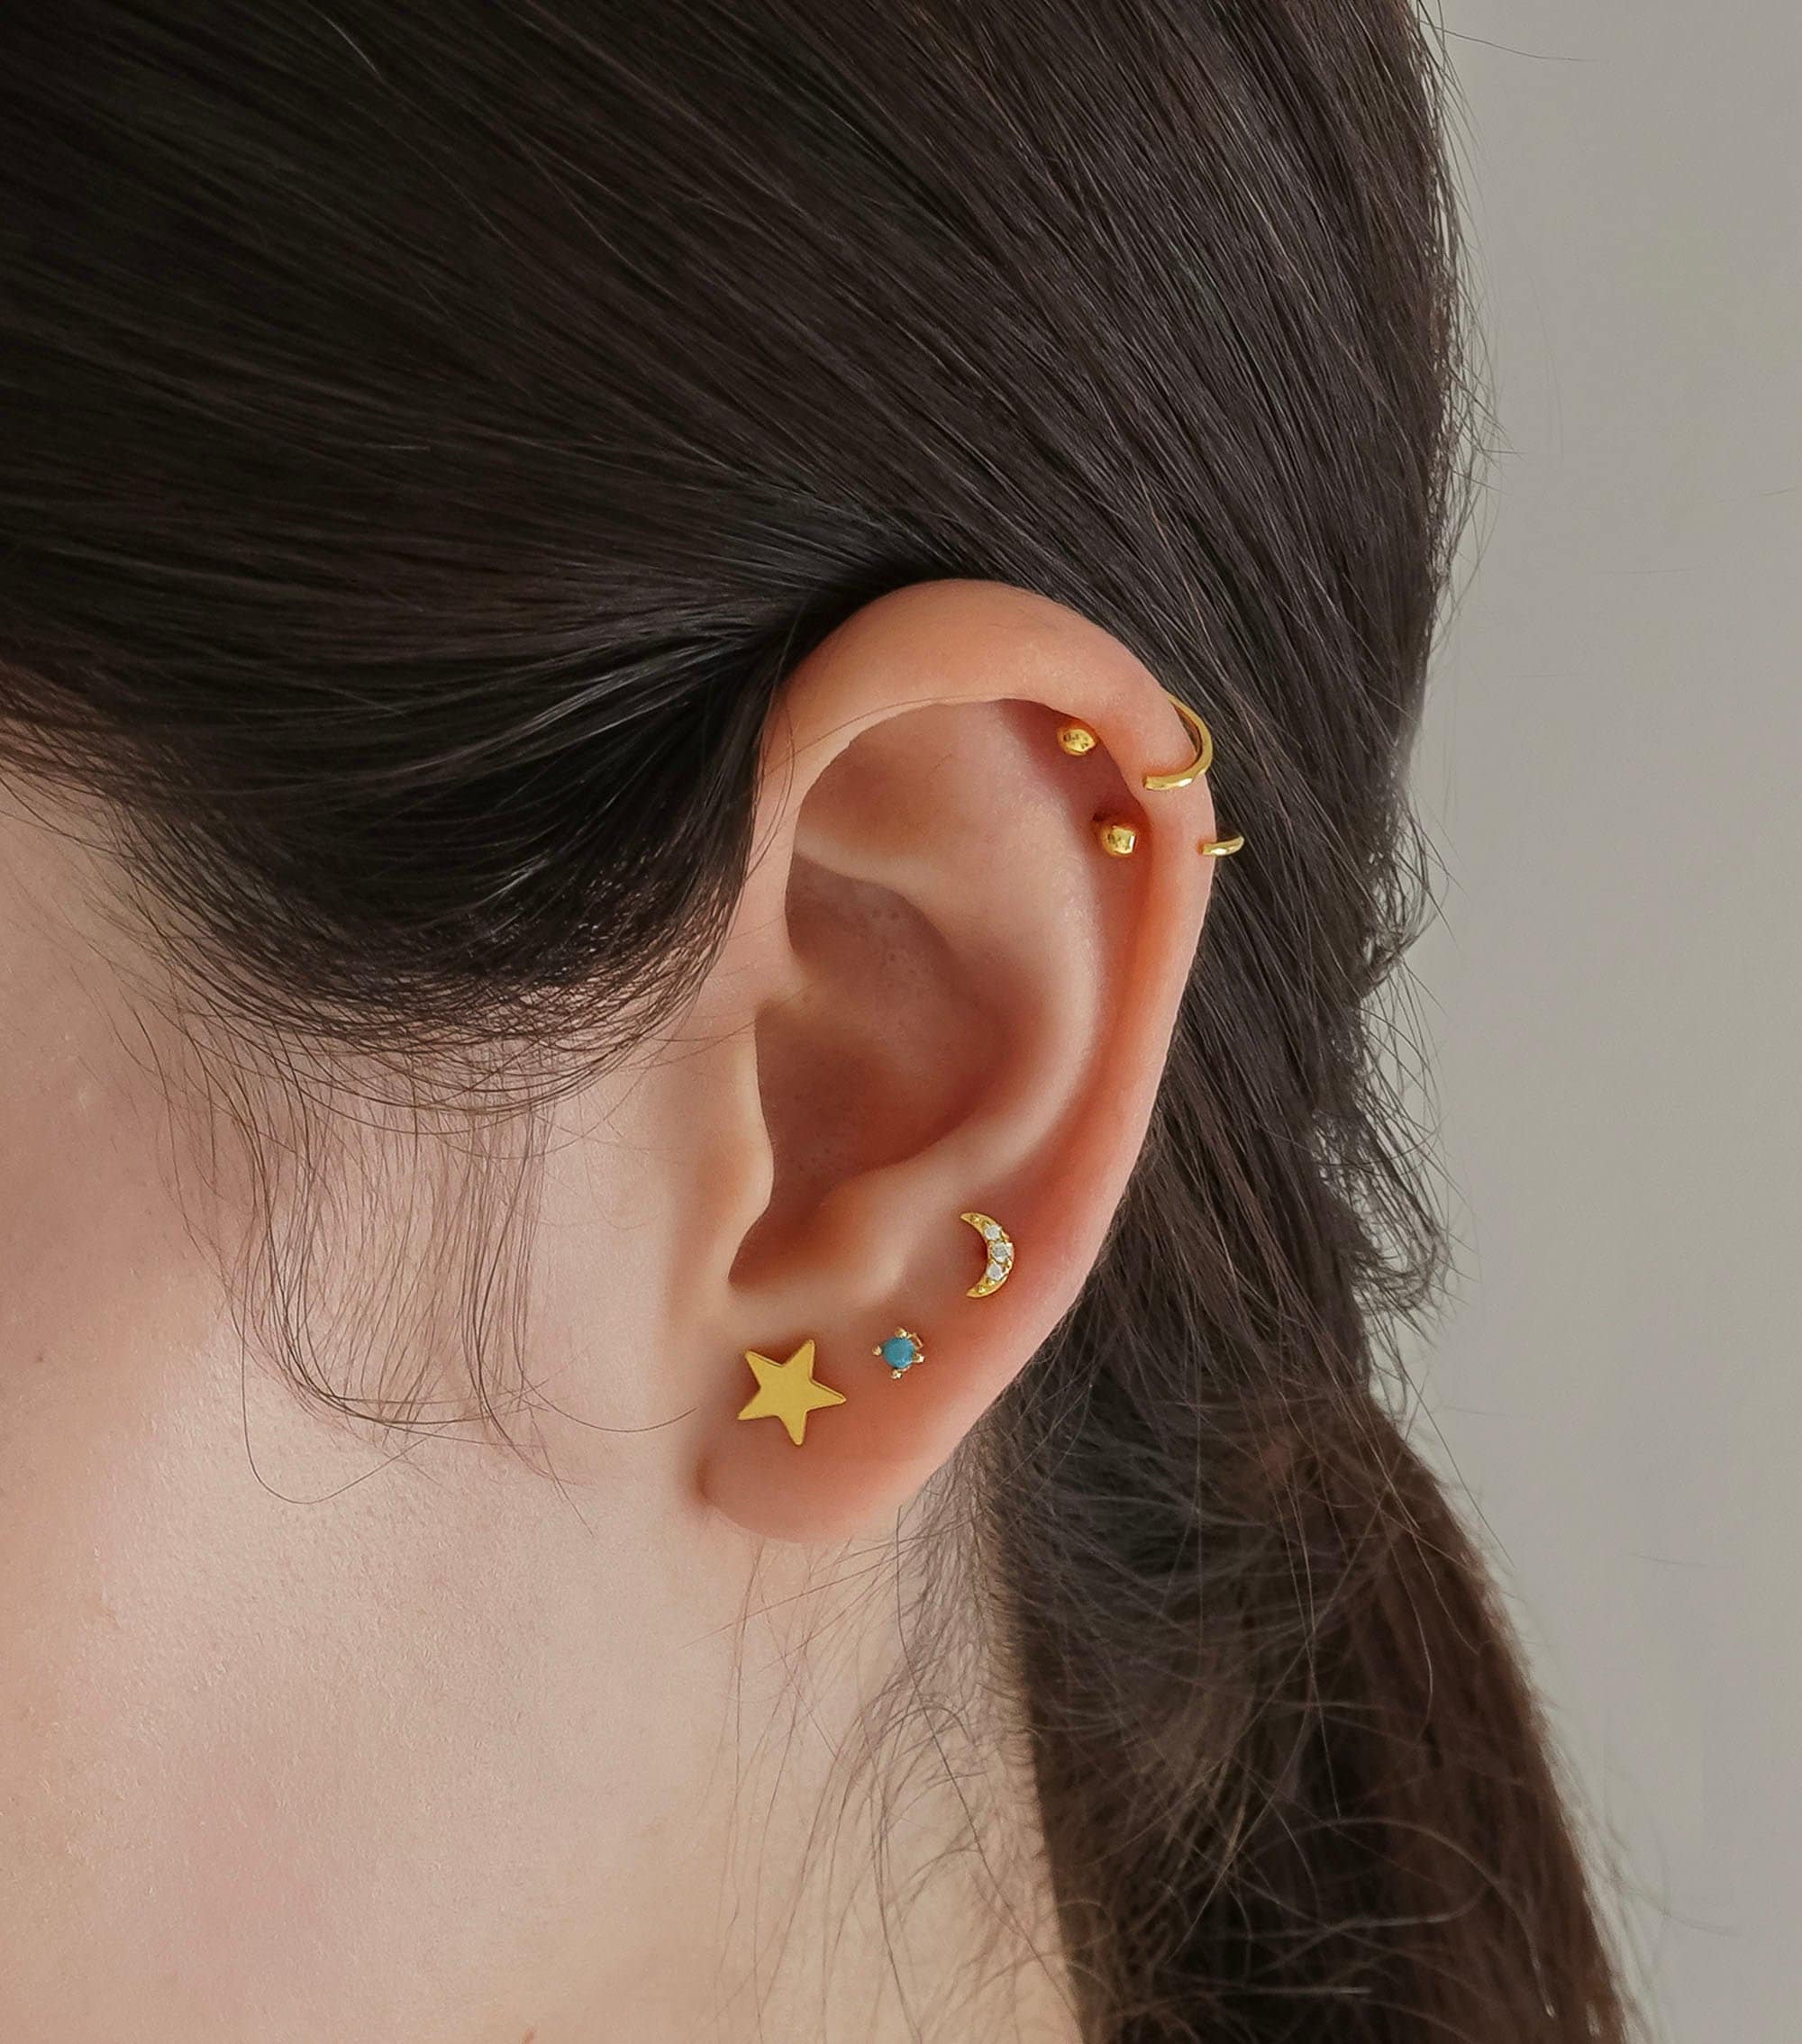 Pentagon Shaped Hoop Earrings with Baguette Diamonds – ARTEMER